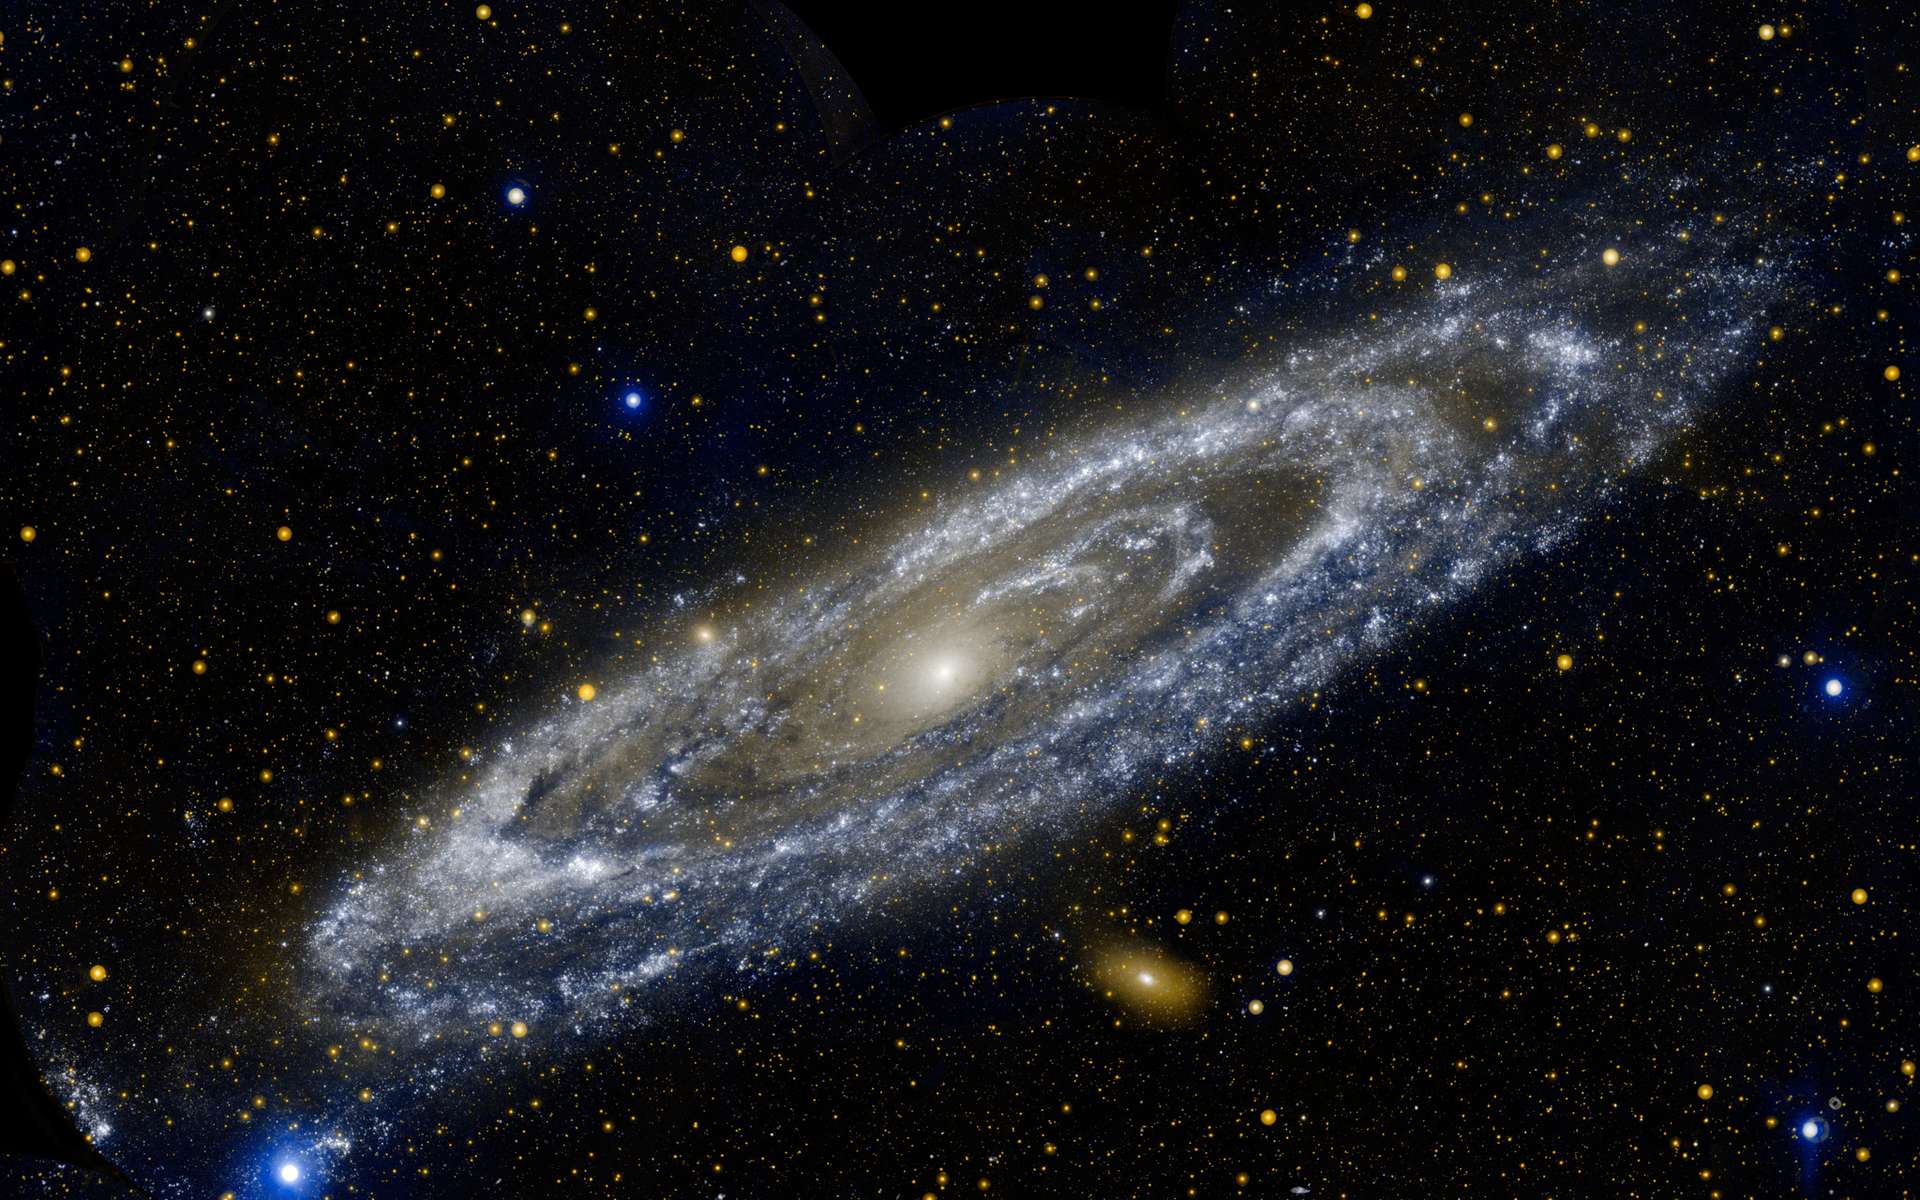 Une vue inhabituelle de la galaxie d'Andromède. M31 est ici prise en photo par Galaxy Evolution Explorer, un observatoire astronomique spatial destiné à l'observation de galaxies dans l'ultraviolet. © Nasa